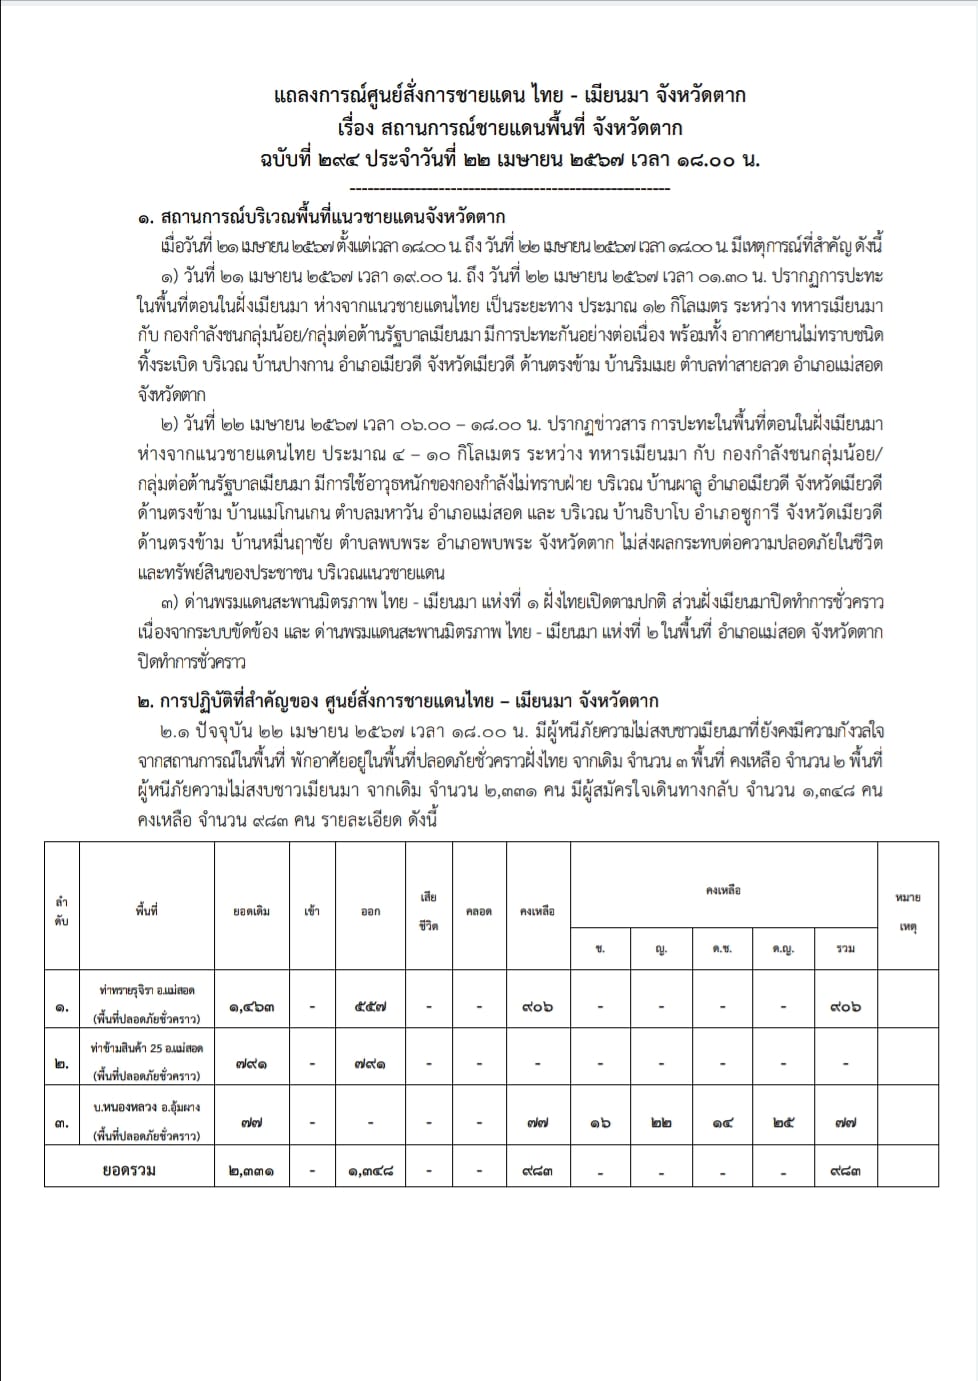 แถลงการณ์ศูนย์สั่งการชายแดนไทยกับประเทศเพื่อนบ้านด้านเมียนมา จังหวัดตาก เรื่อง สถานการณ์ชายแดนพื้นที่ จังหวัดตาก ฉบับที่ 294 ประจำวันที่ 22 เม.p.67